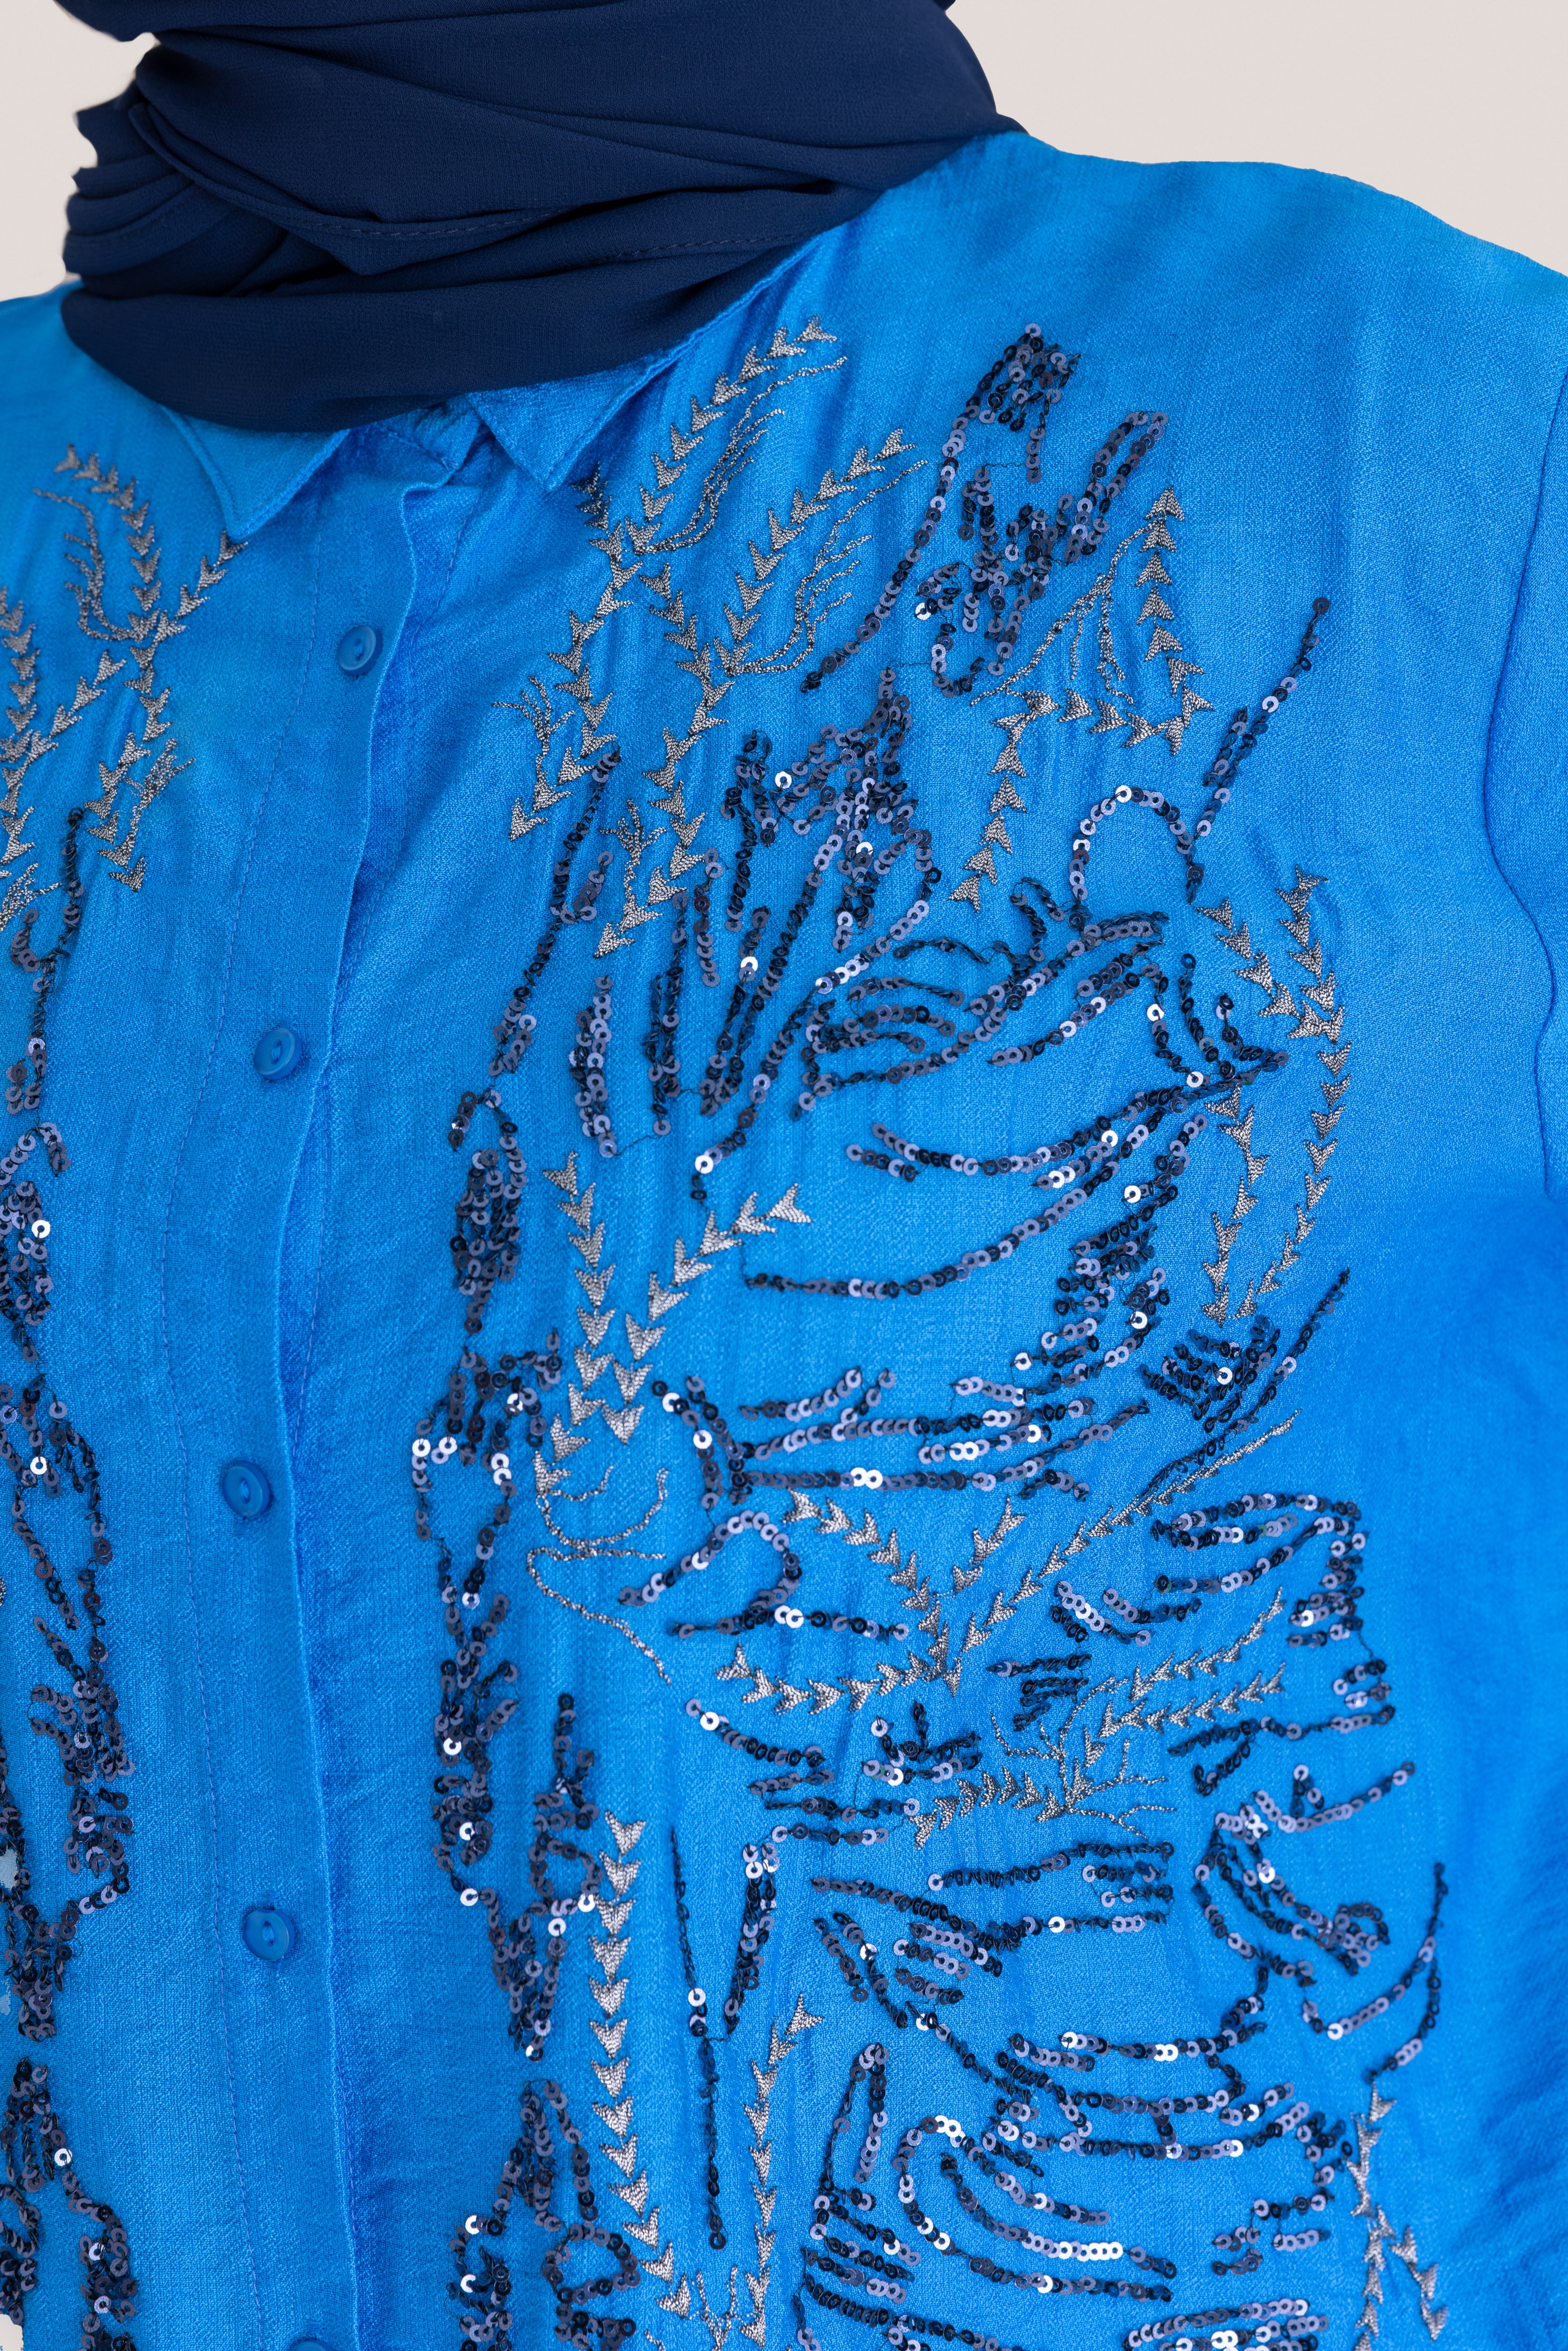 Embellished Patterned Loose Fit Top - Blue